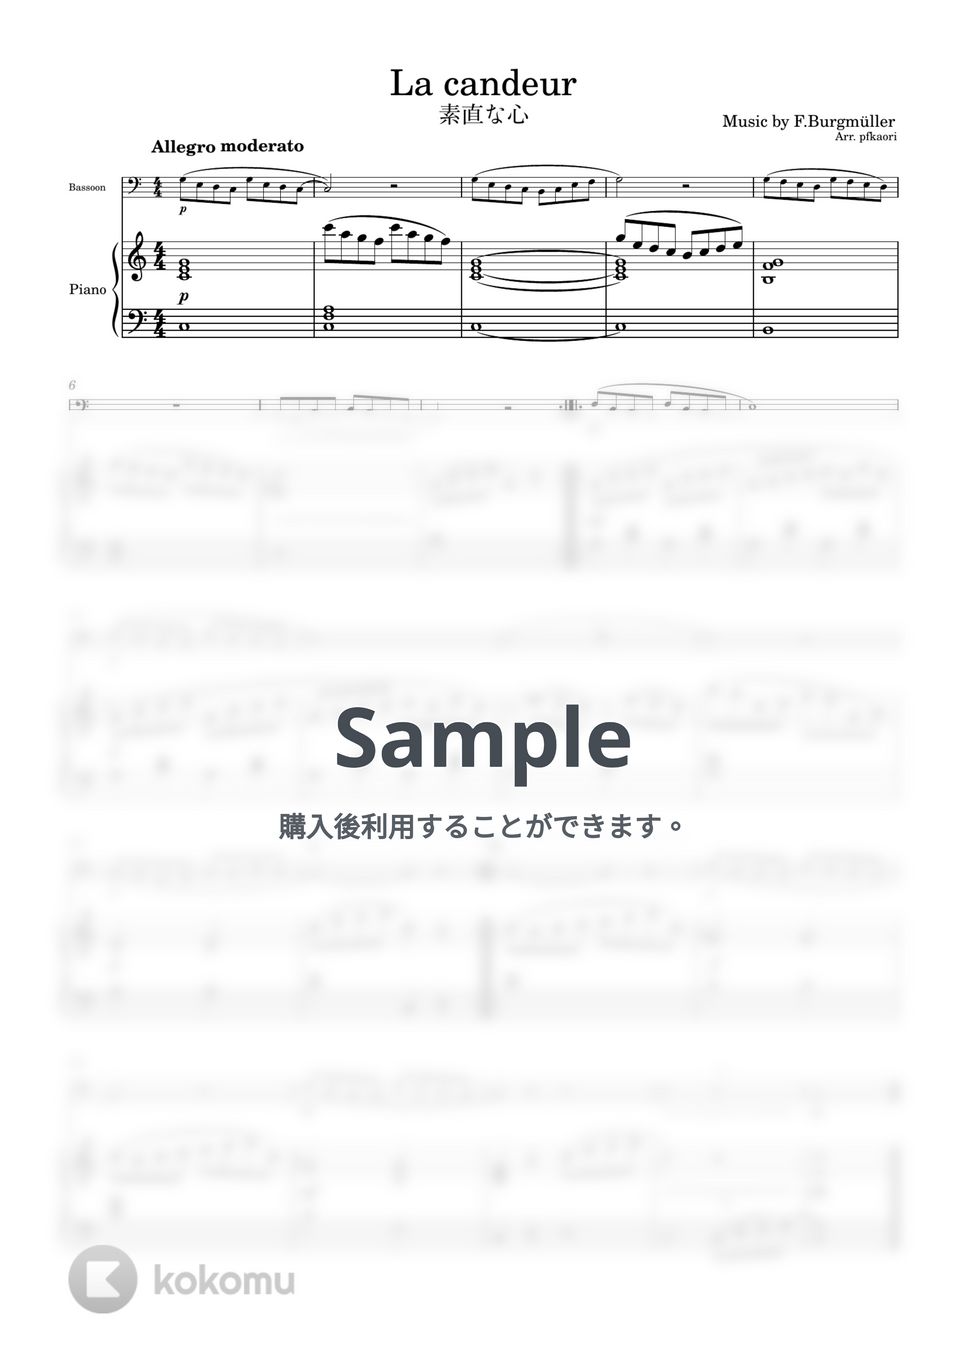 ブルグミュラー - 素直な心 (ファゴット&ピアノ) by pfkaori